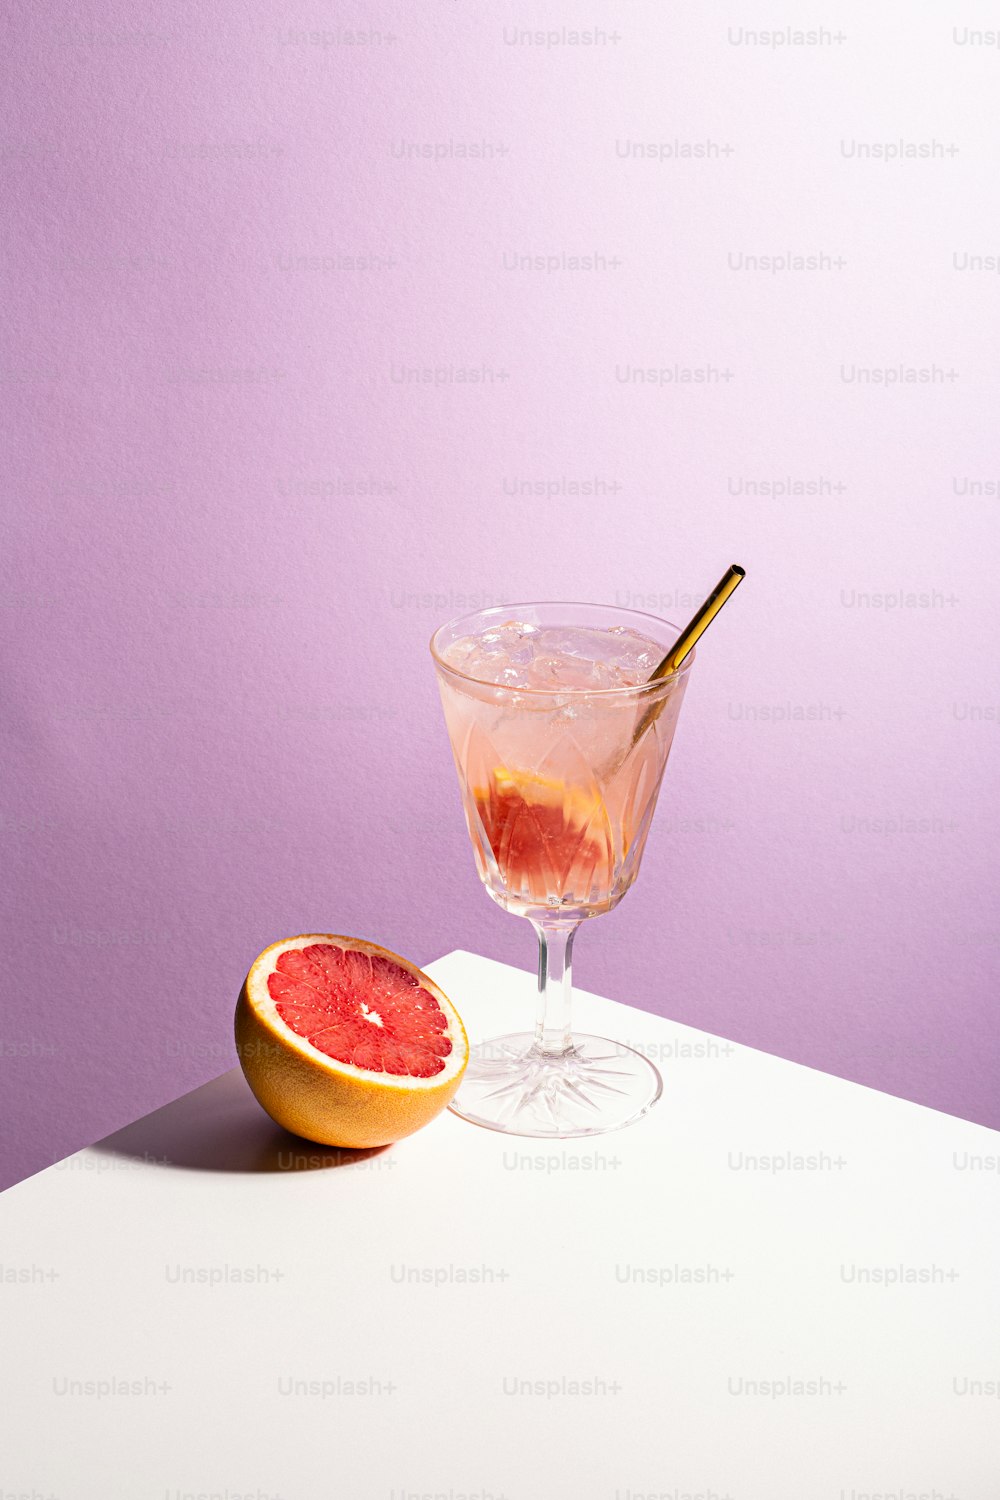 eine Grapefruit und ein Glas Wein auf dem Tisch